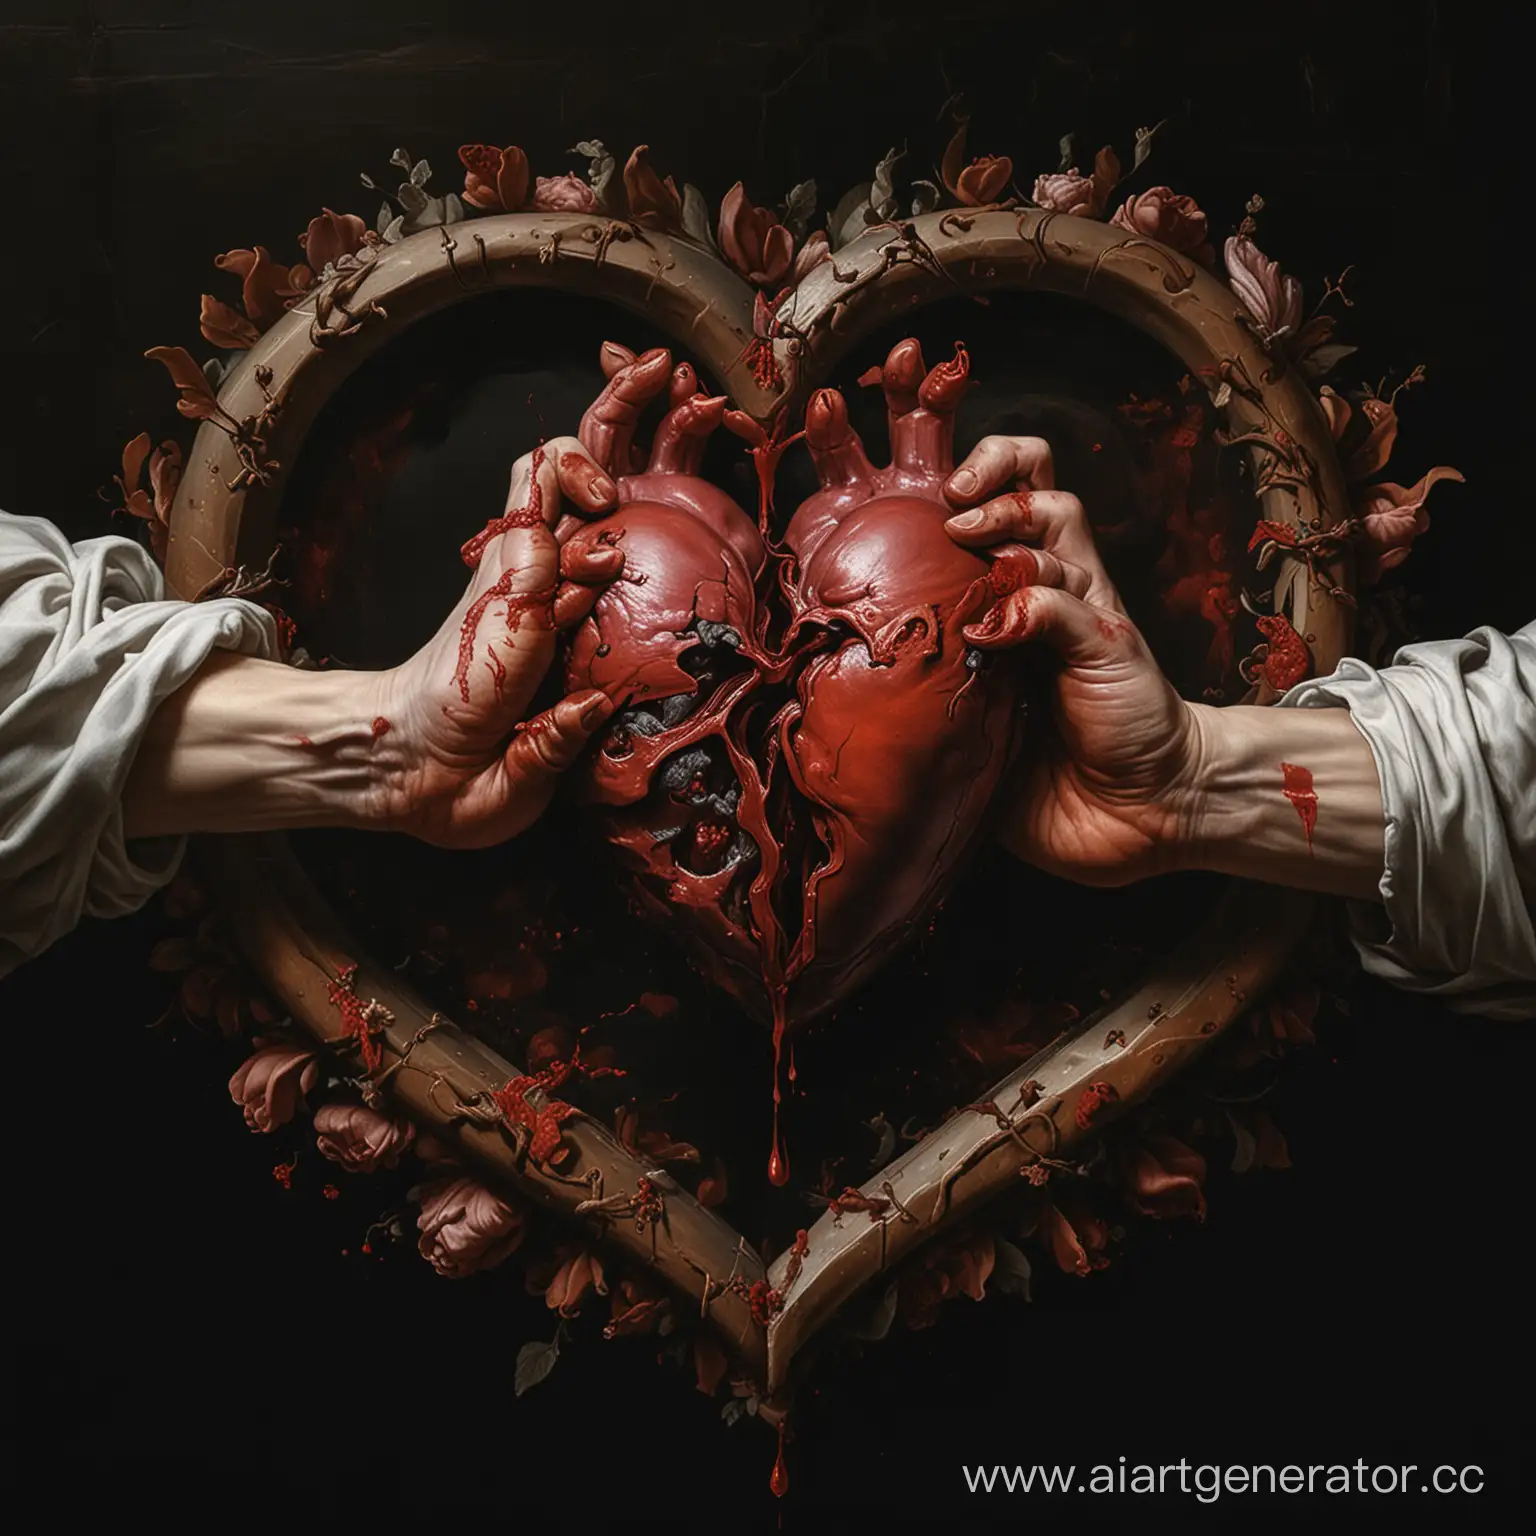 Чёрный фон, в центре изображения окровавленное человеческое сердце. К нему тянутся две руки в крови, как в Сикстинской капелле. 